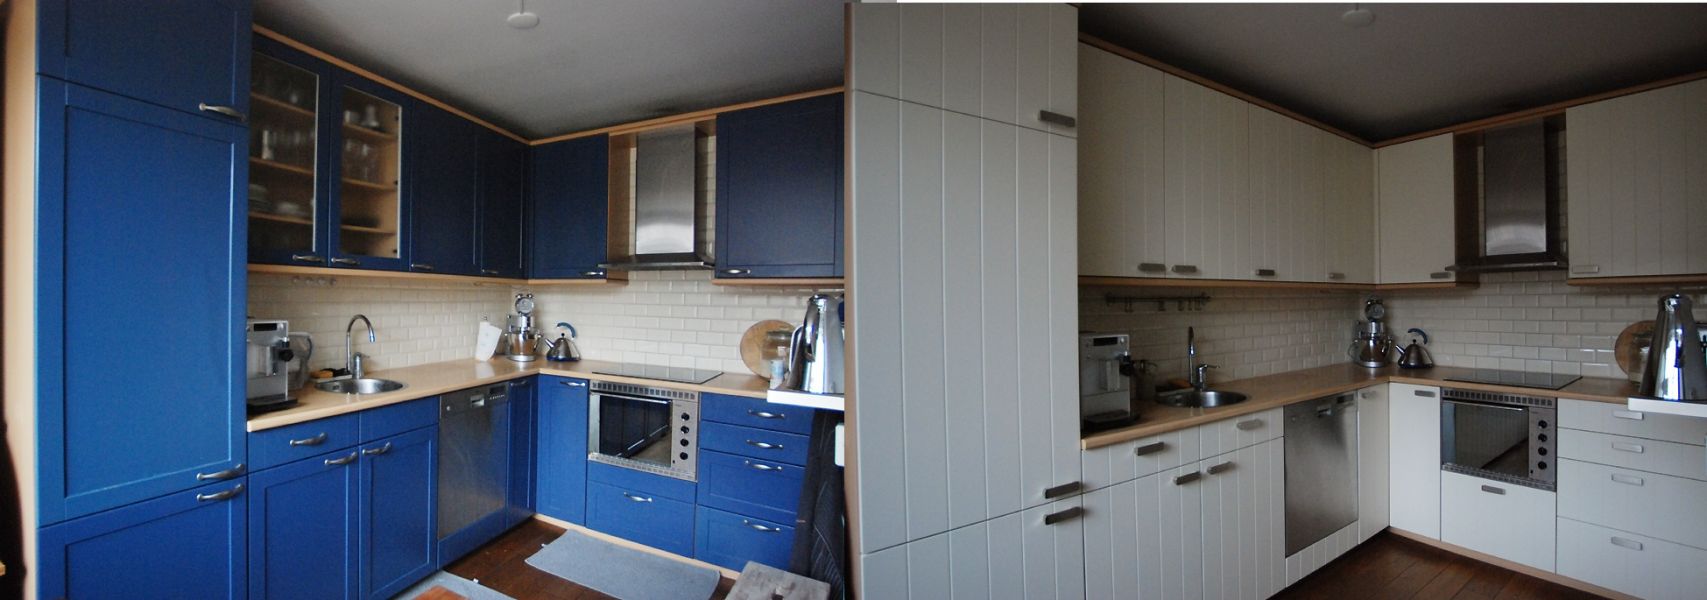 Keukenrenovatie en keukendeurtjes vervangen- keukenblad vernieuwen